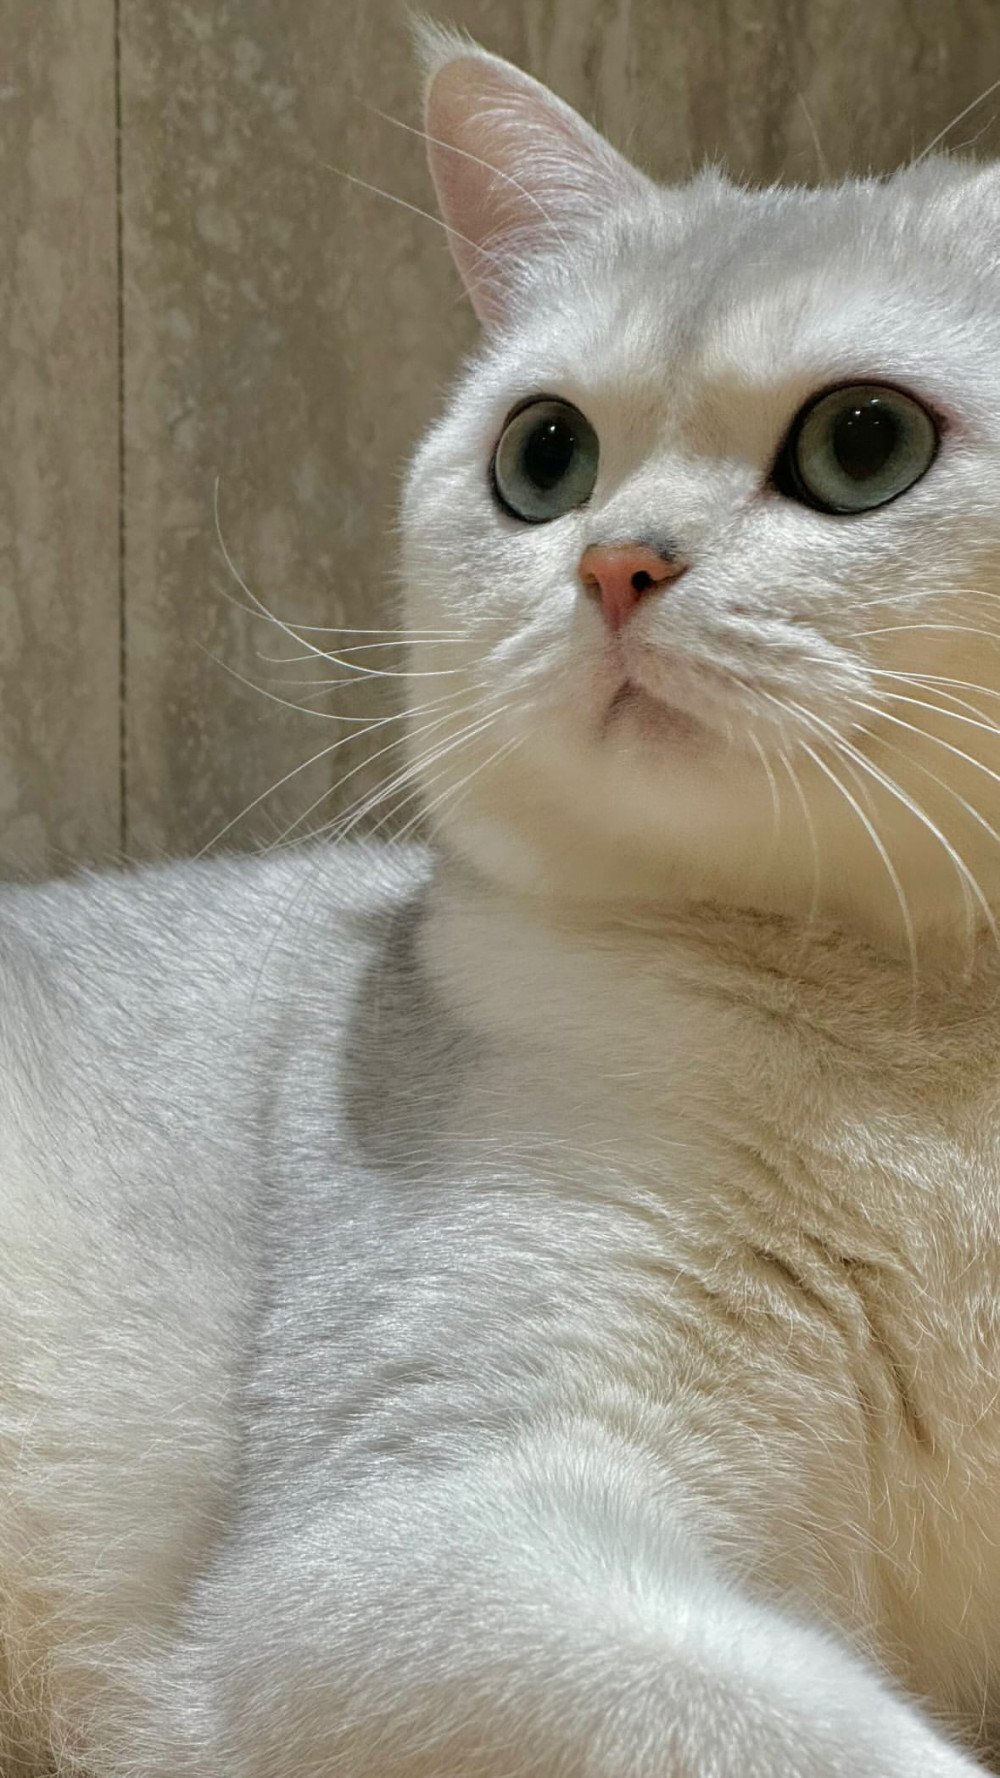 Тэмин из SHINee поделился новыми фото своих любимых котов